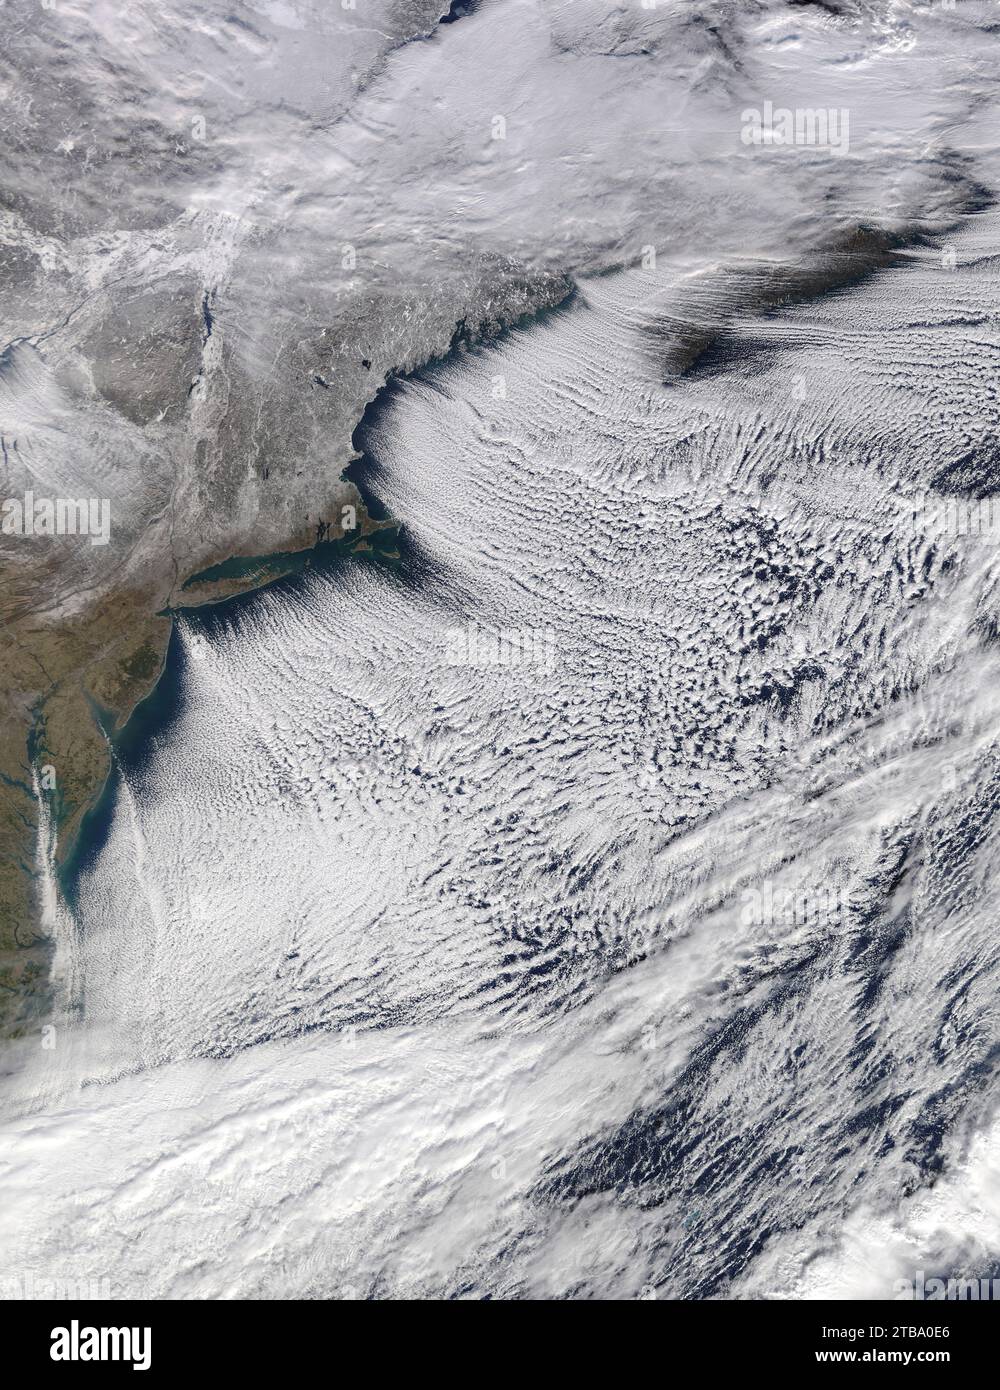 Vue satellite du paysage gelé du Nord-est avec des rues nuageuses soufflant sur l'océan Atlantique. Banque D'Images